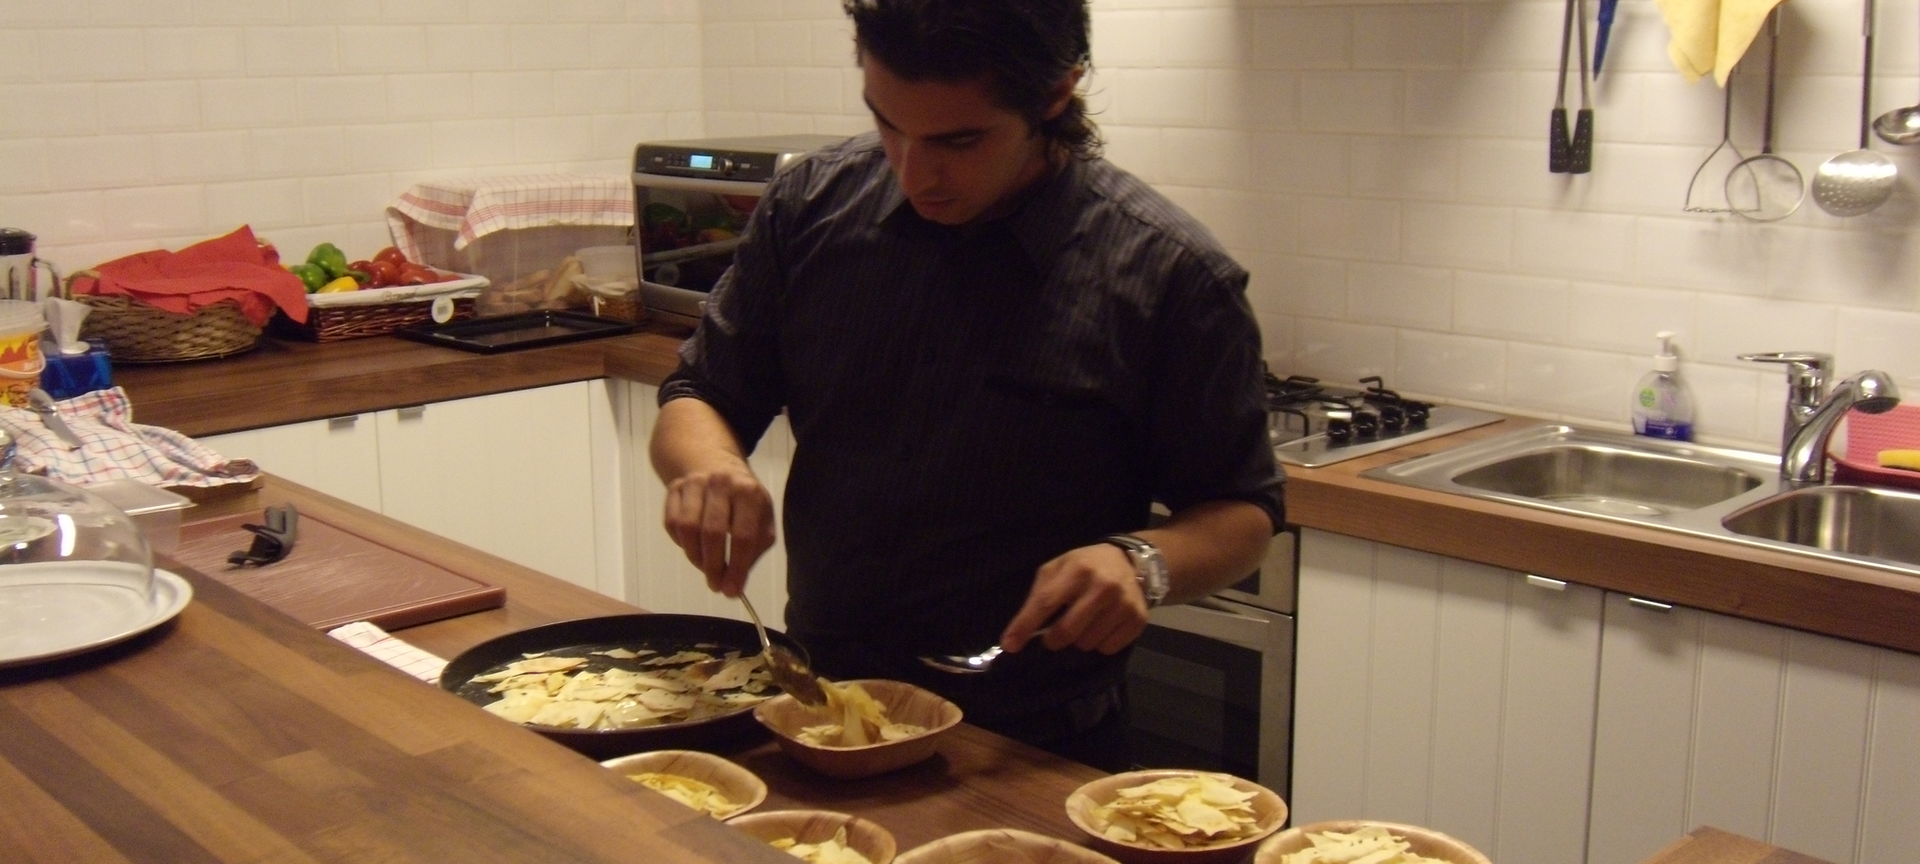 Enoteca Winebar 'Franco Gallo' - Open keuken